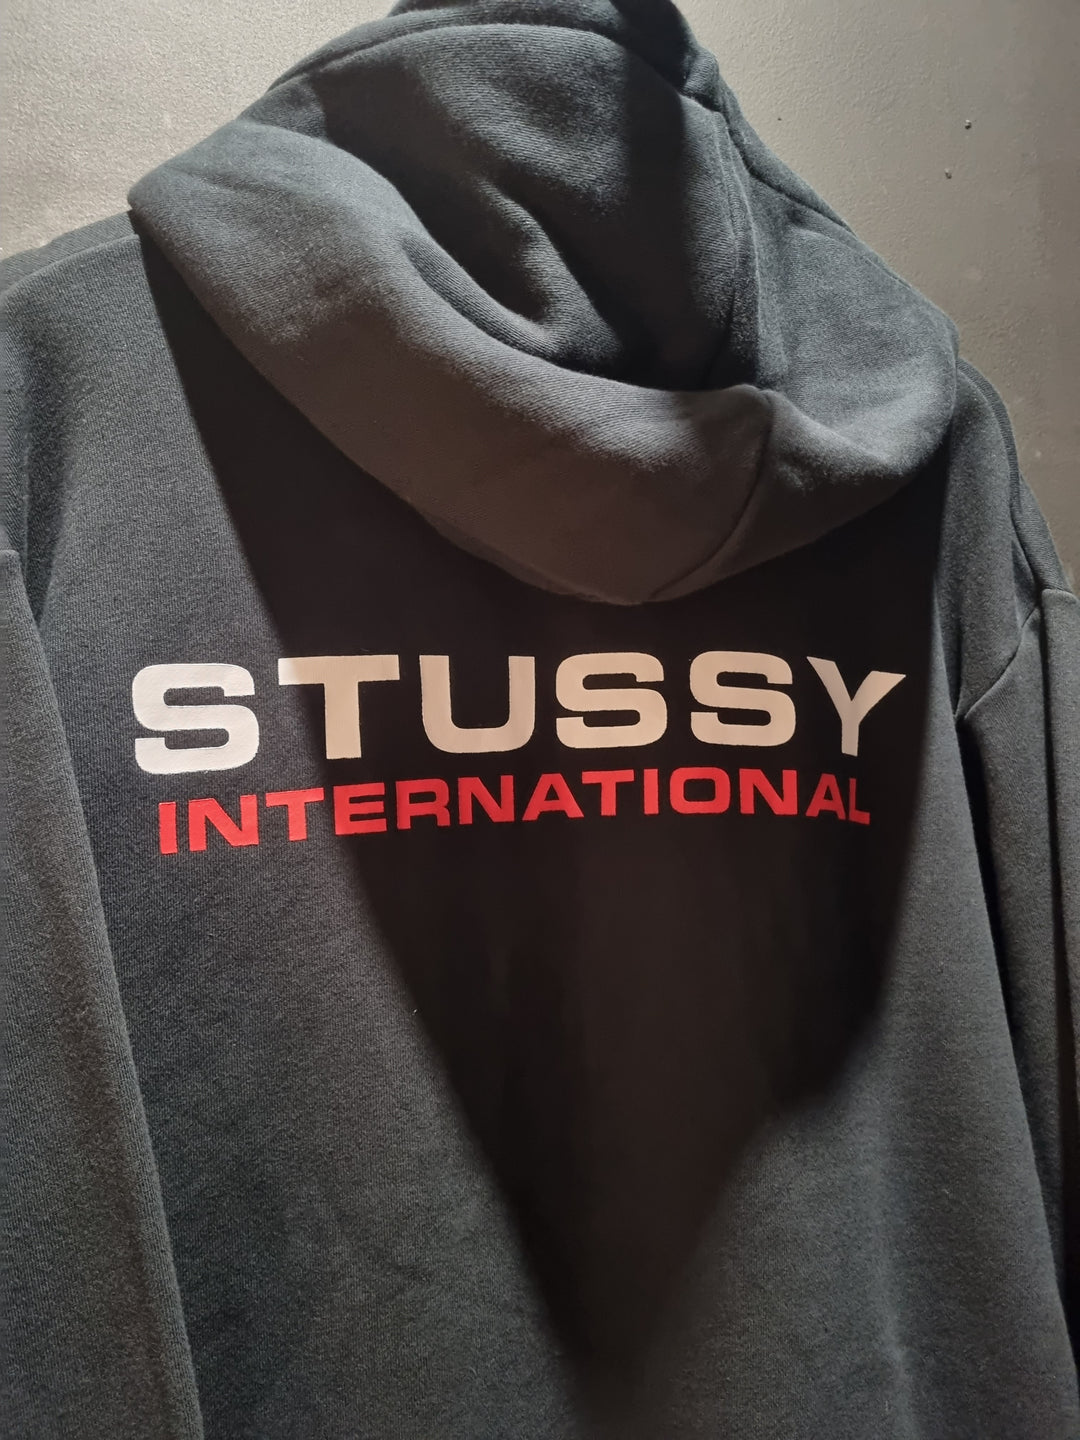 Stussy International Black Hoodie Large